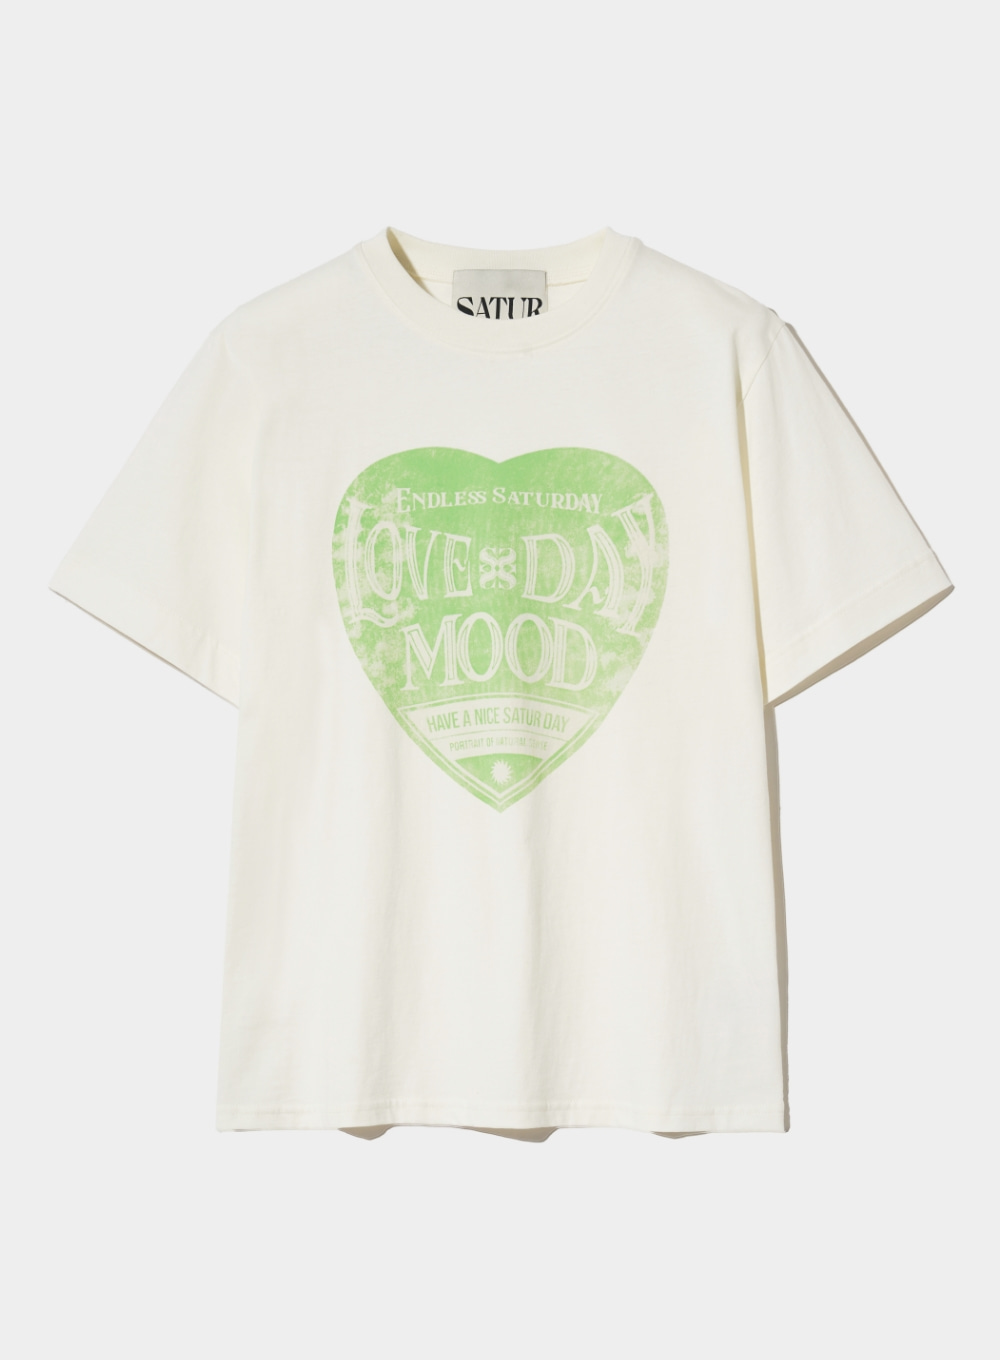 [5,000원 쿠폰] Saturday Retro Mood Graphic T-Shirts - Cream Green